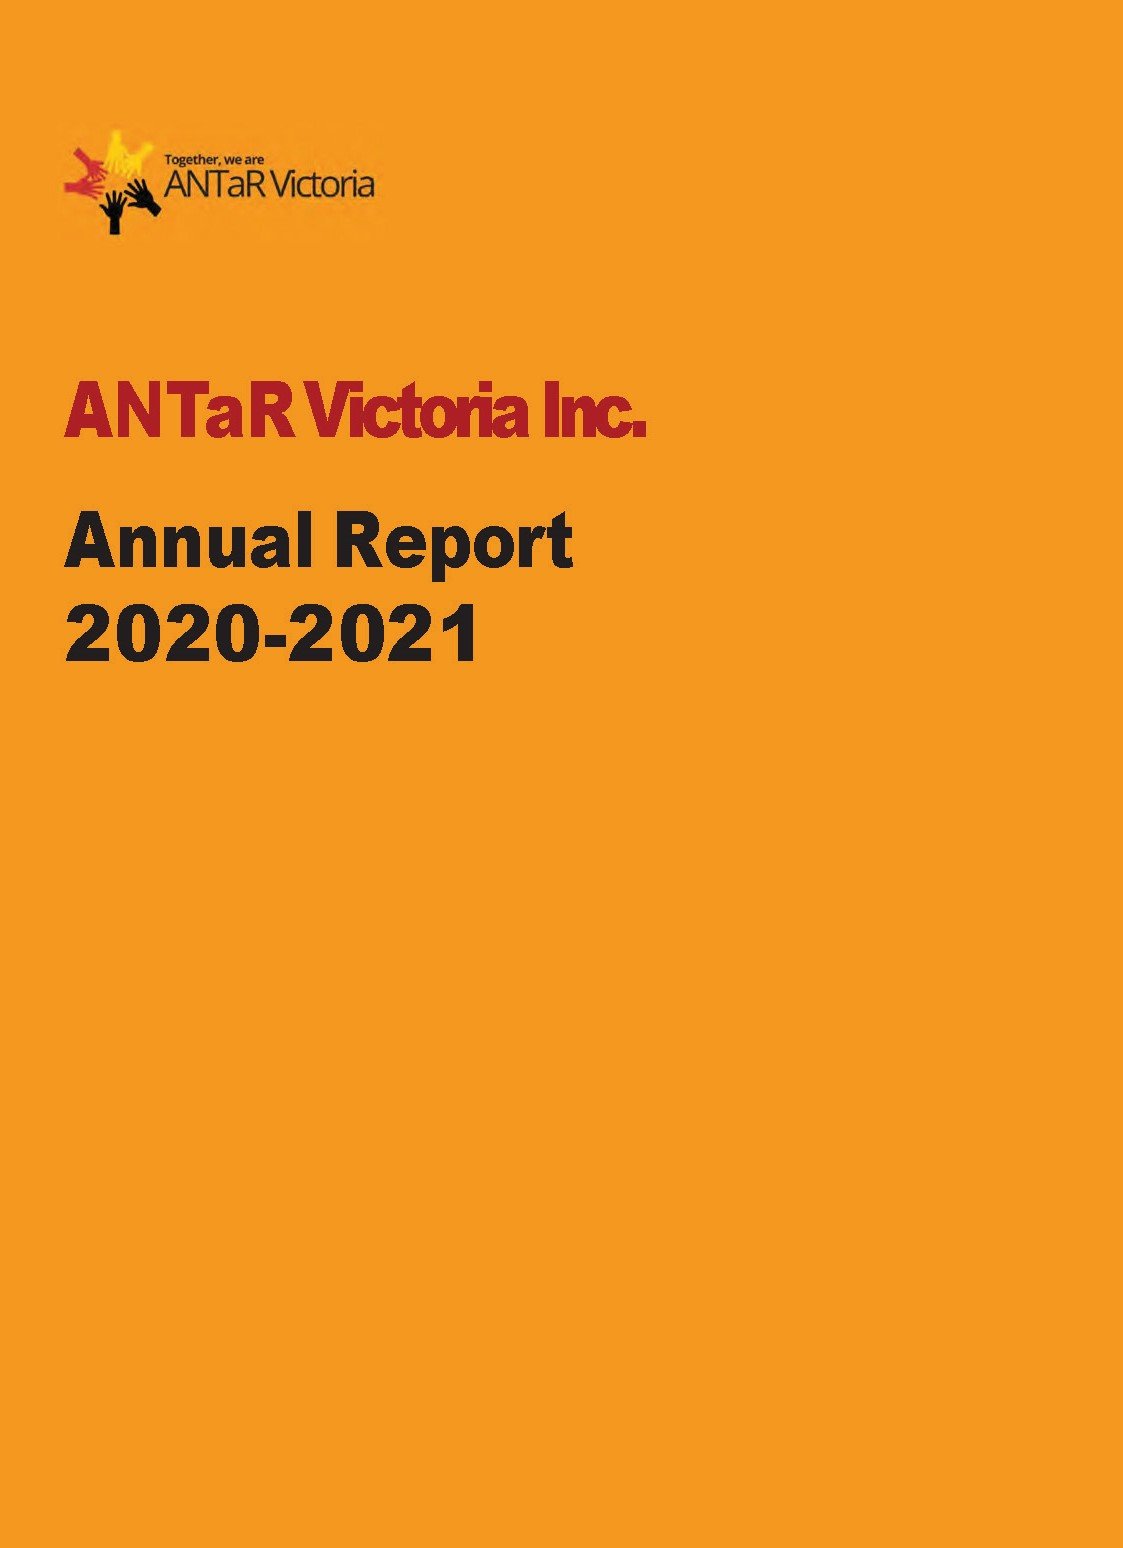 ANTaR Annual Report 2020-2021